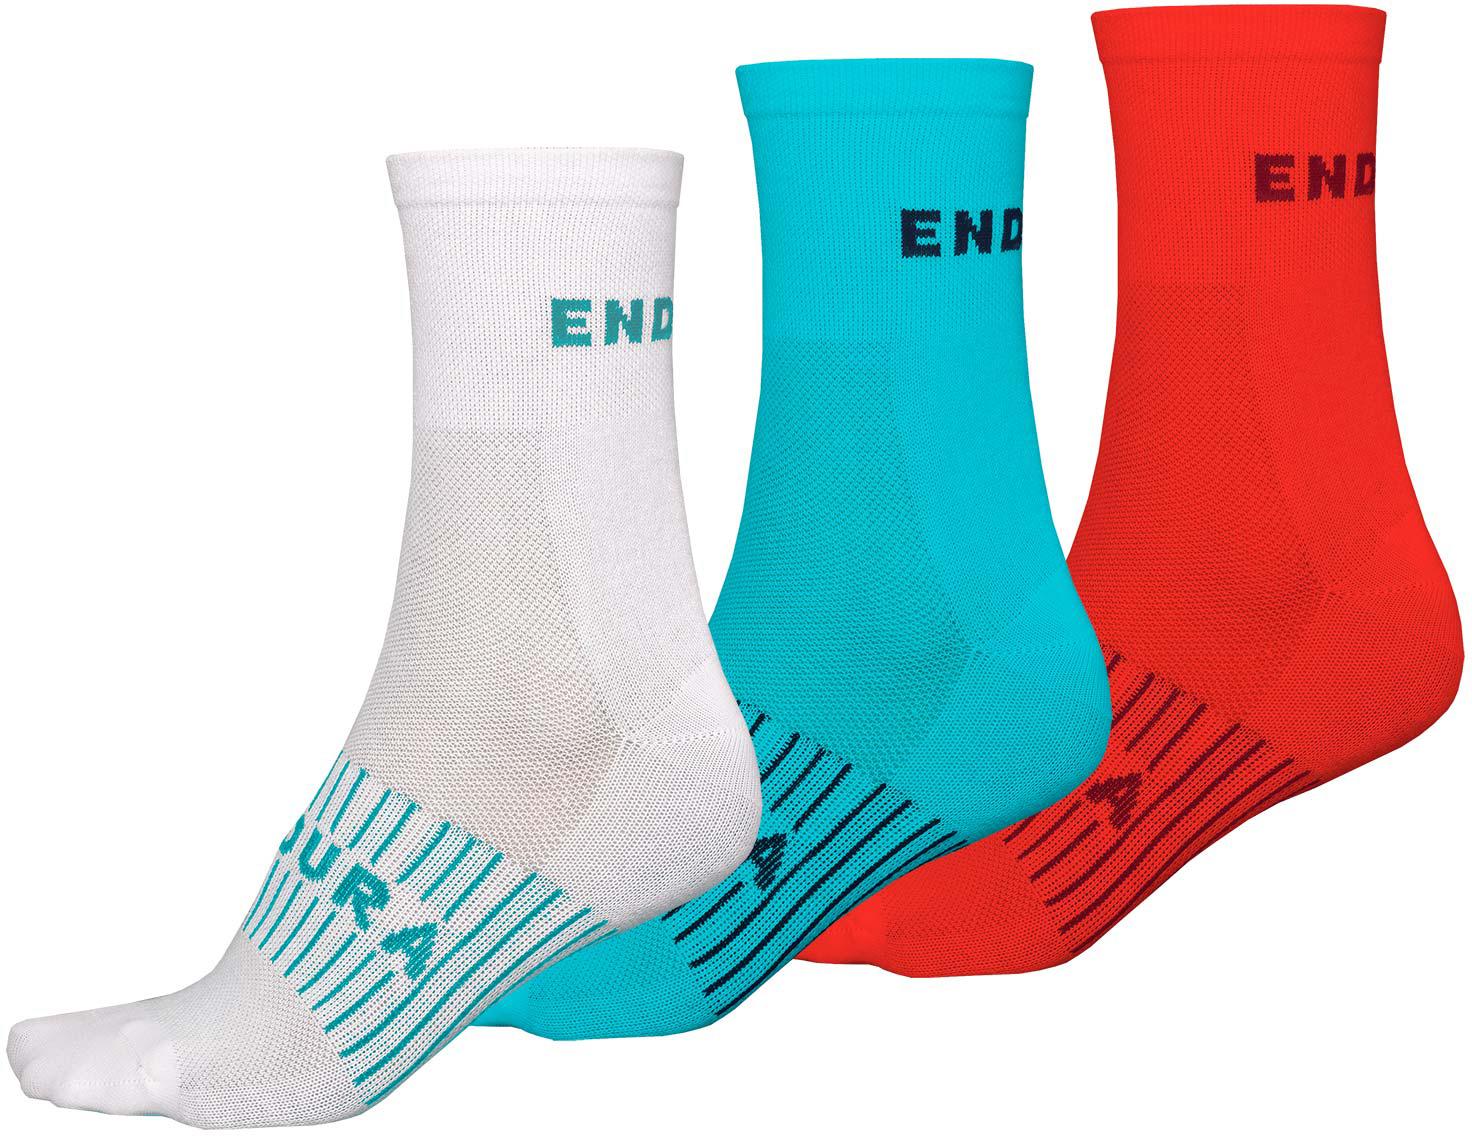 Endura Womens Coolmax Race Socks (3-pack) - White/blue/red